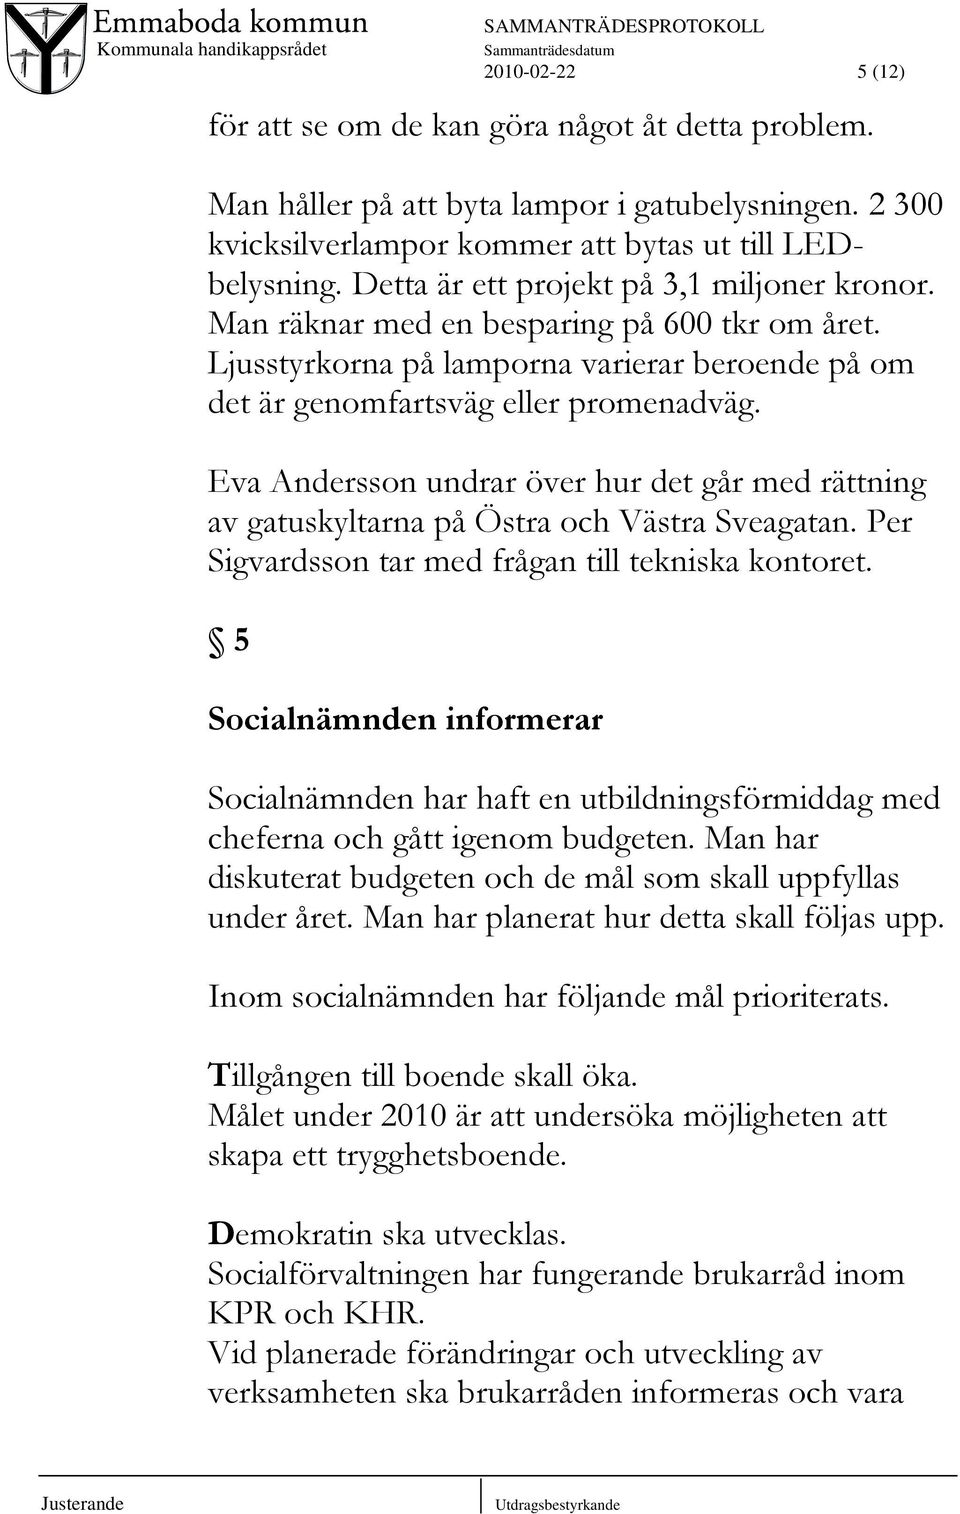 Eva Andersson undrar över hur det går med rättning av gatuskyltarna på Östra och Västra Sveagatan. Per Sigvardsson tar med frågan till tekniska kontoret.